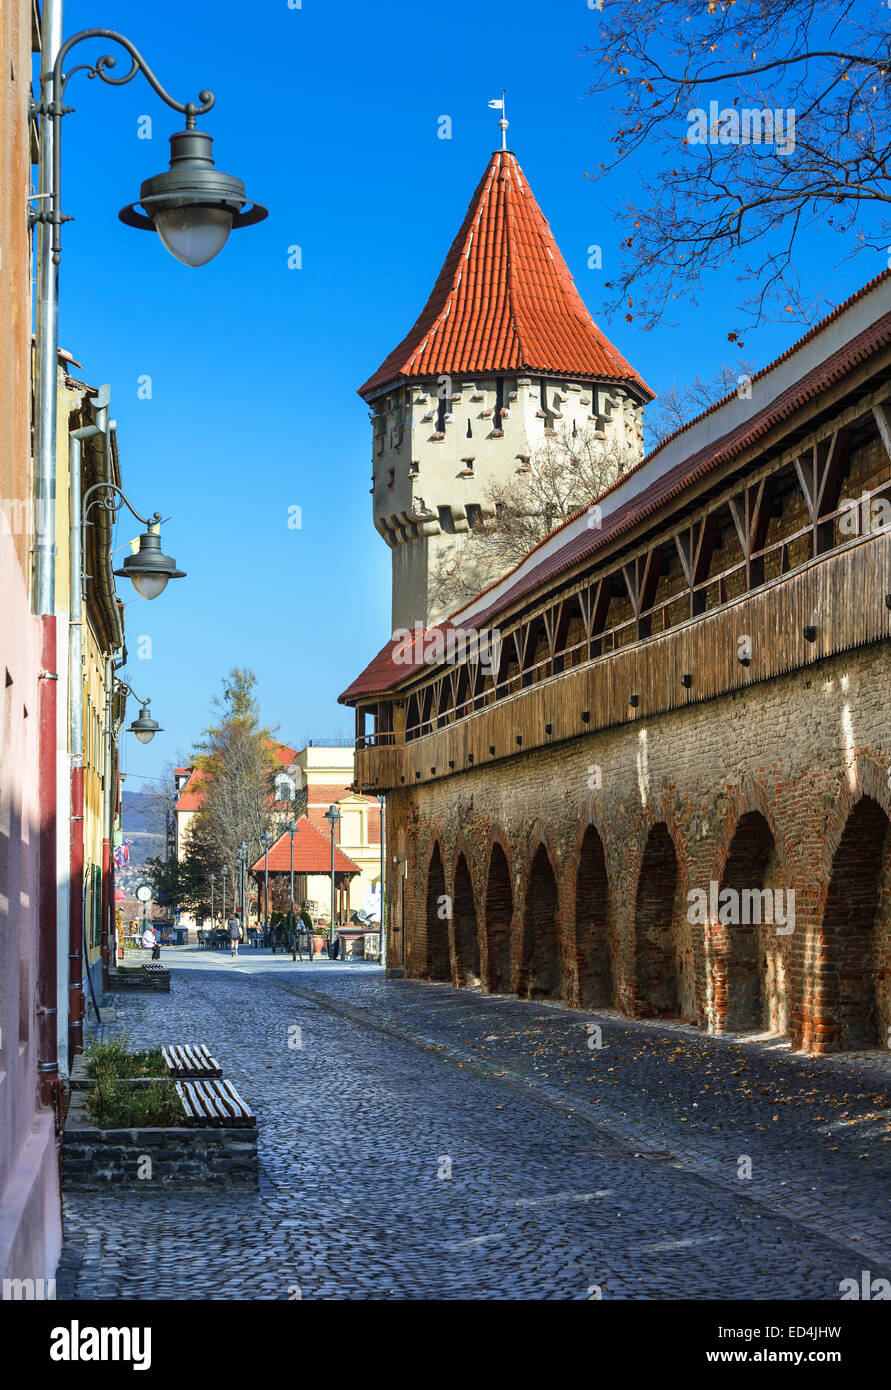 Sibiu, Rumänien. Mittelalterlichen Turm von Steinmauern Befestigung der antiken Stadt Siebenbürgens, rumänische Wahrzeichen. Stockfoto